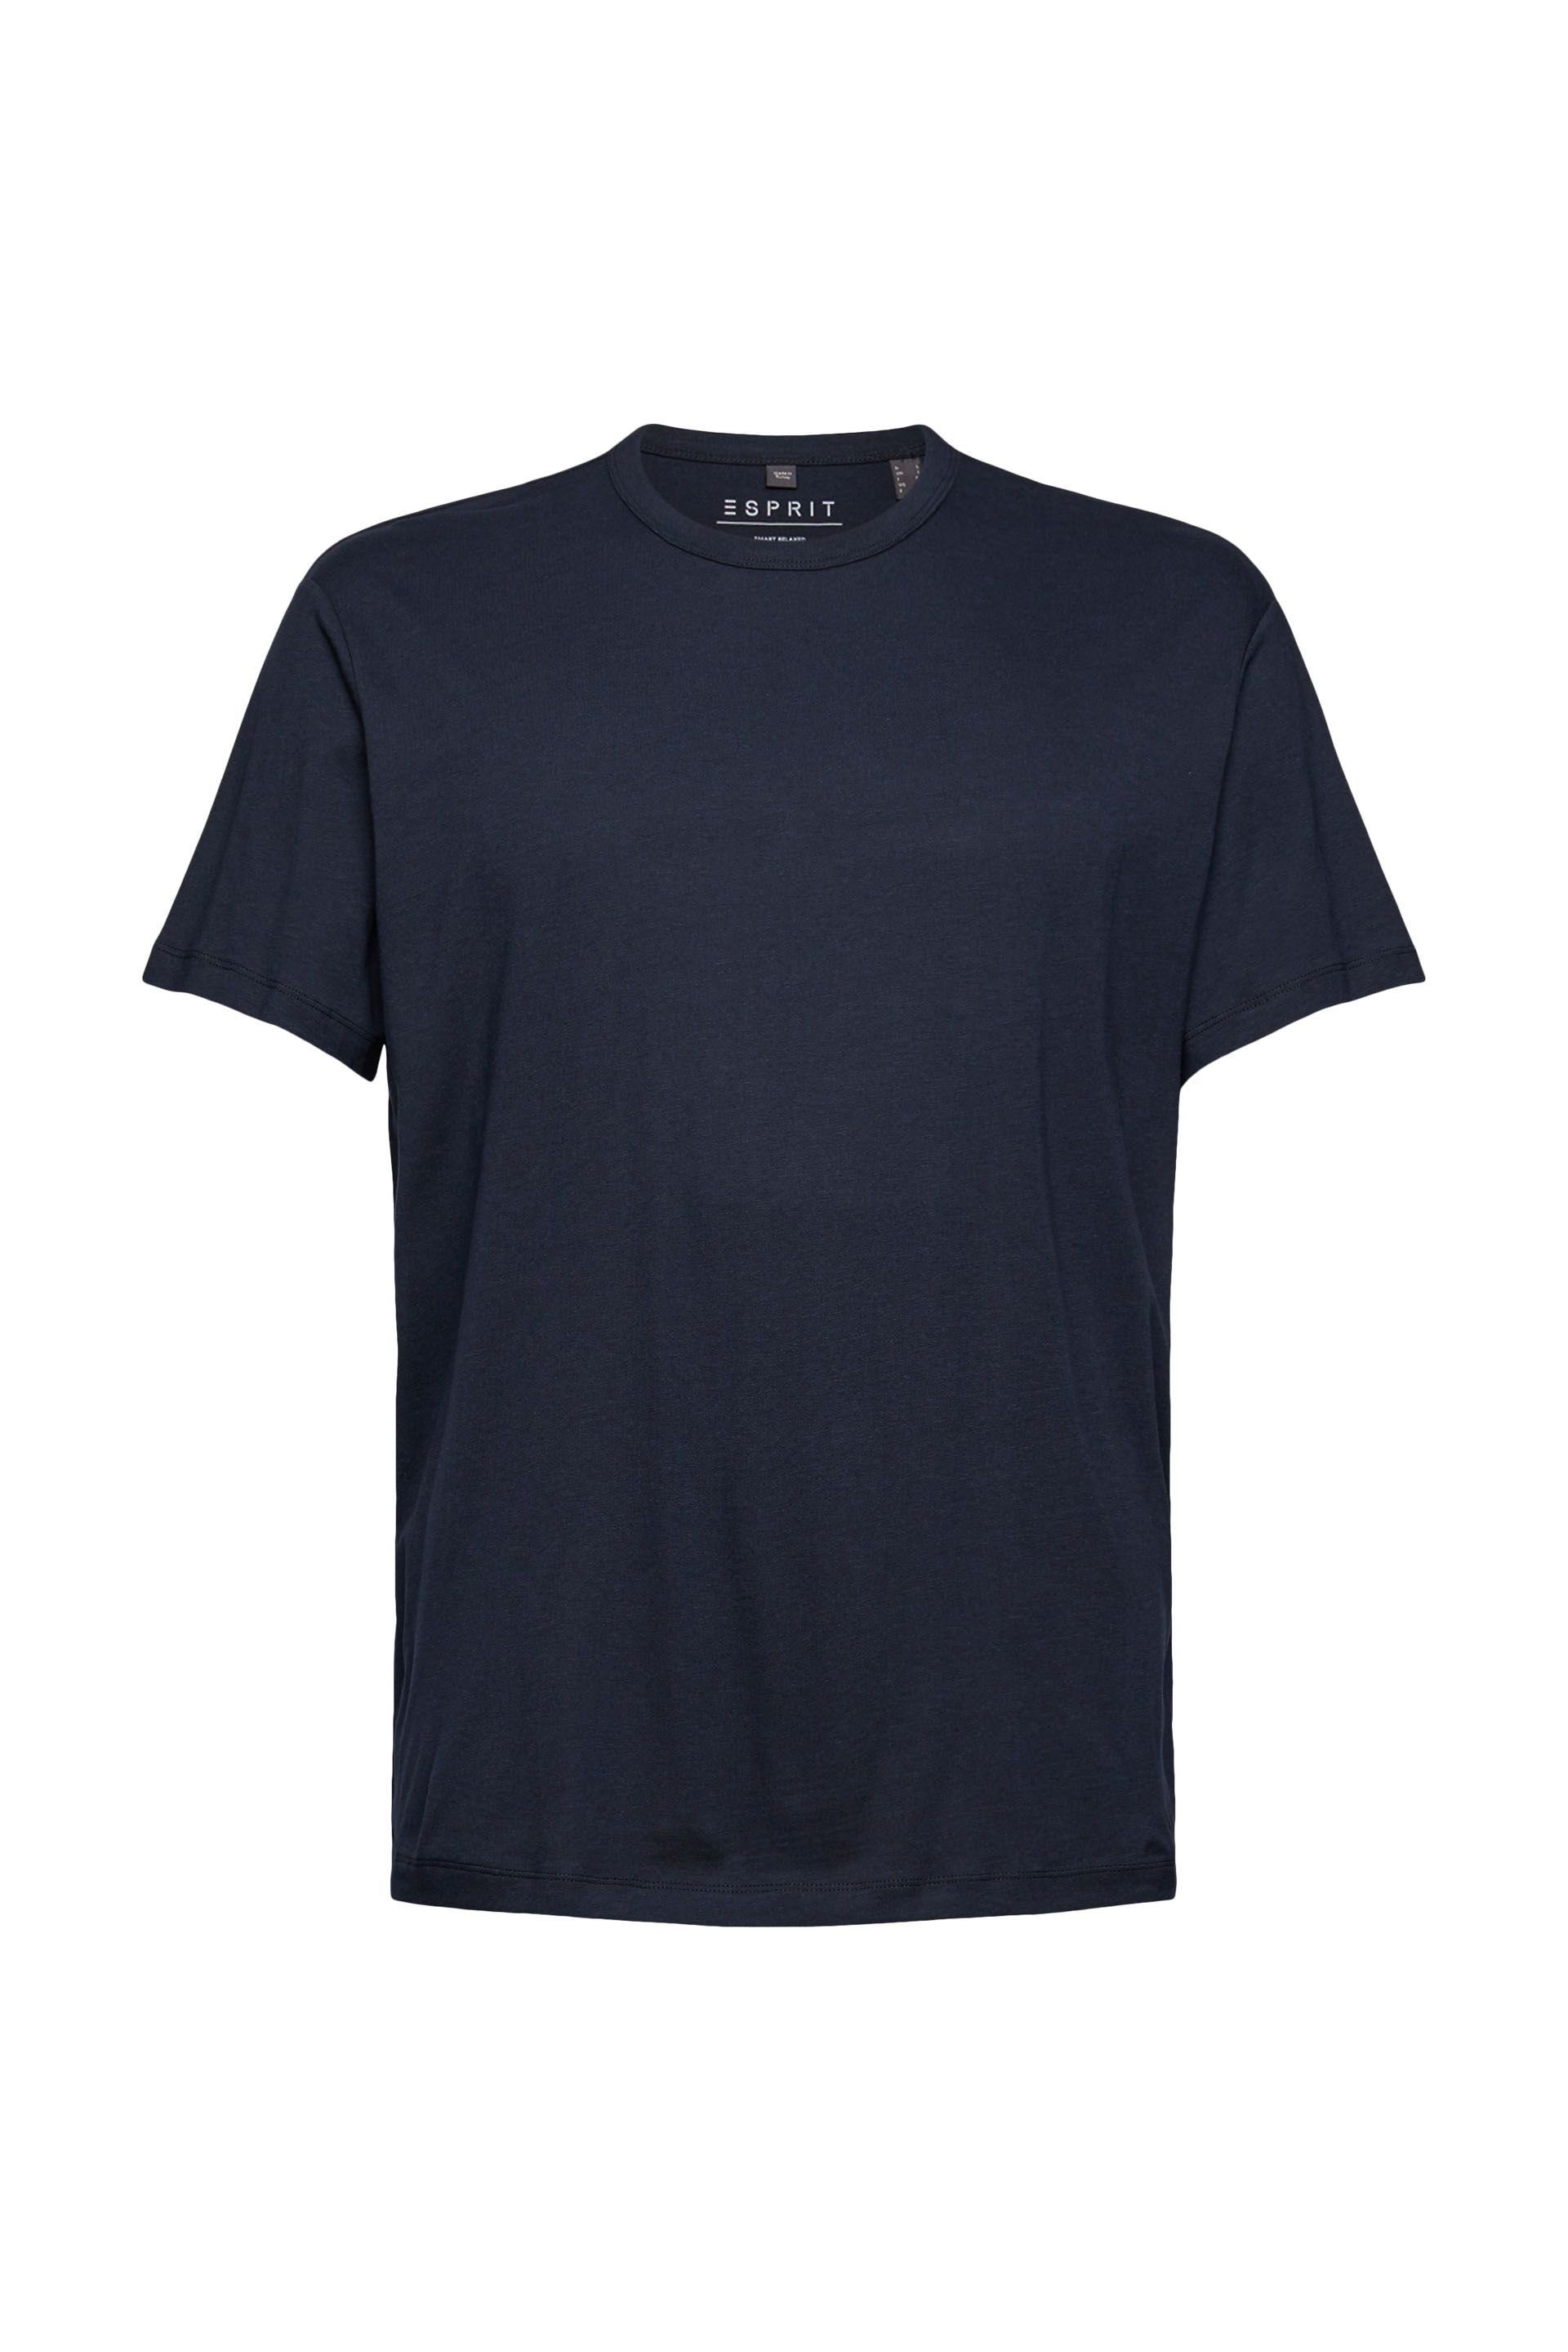 Esprit T-Shirt navy